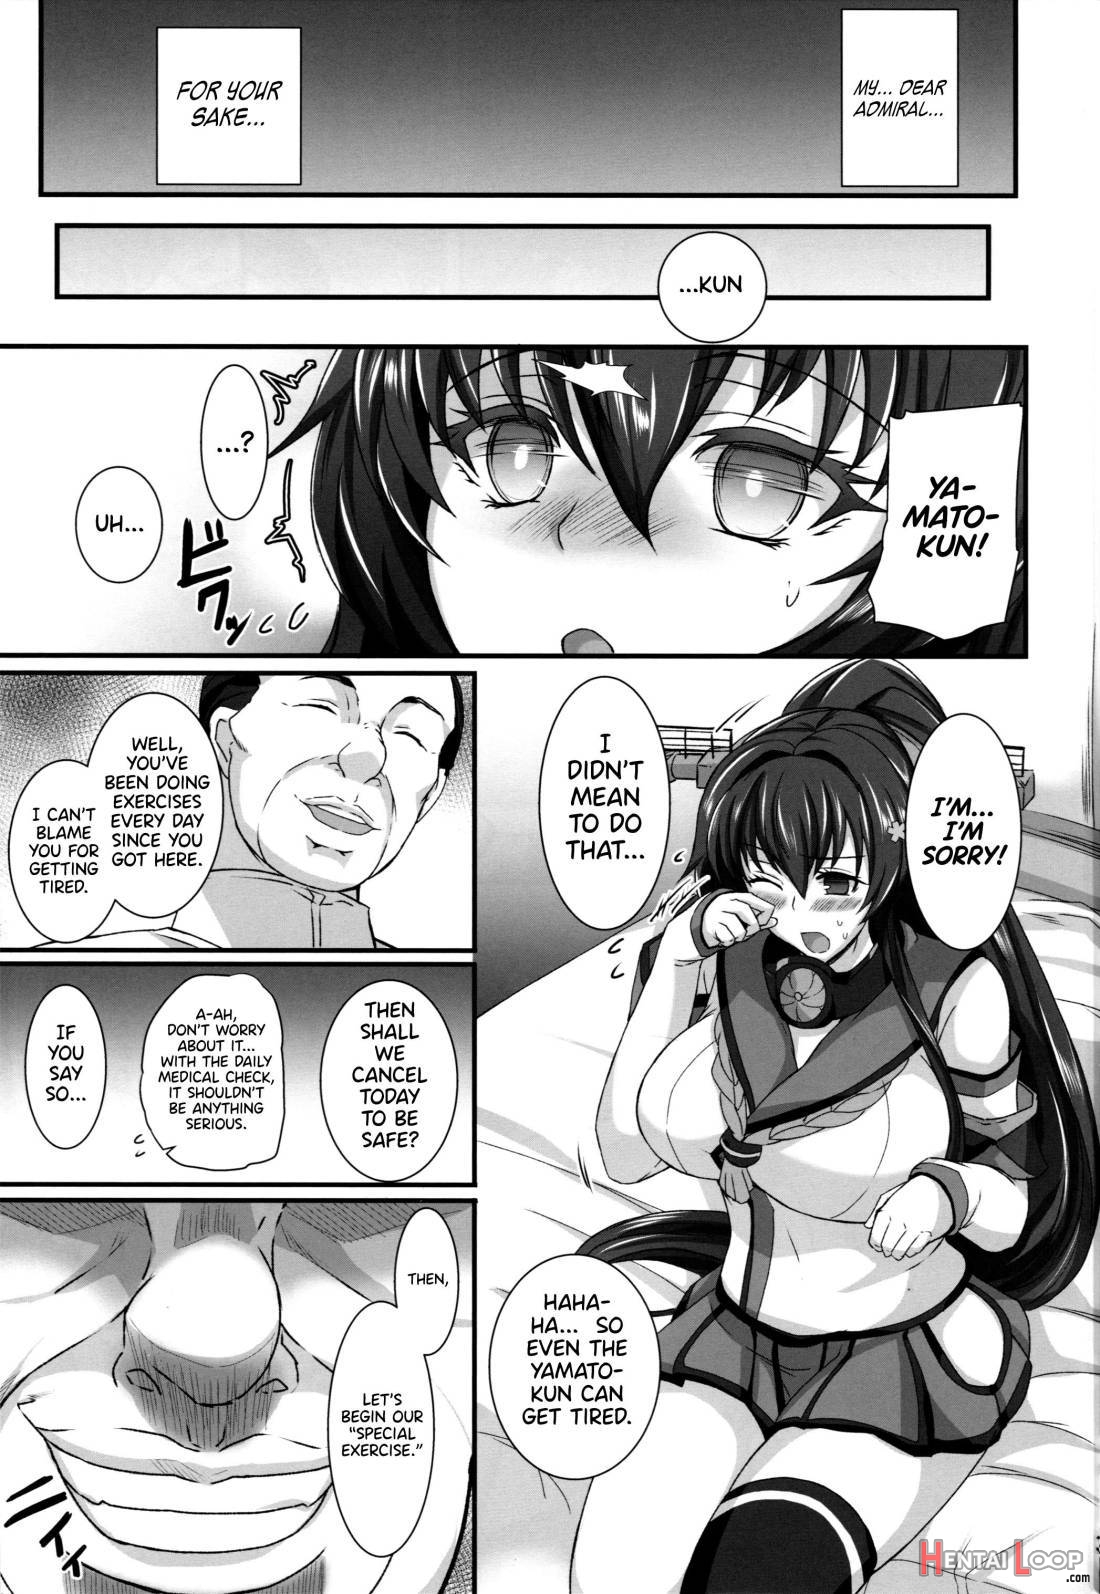 Yamato Dakkan page 4